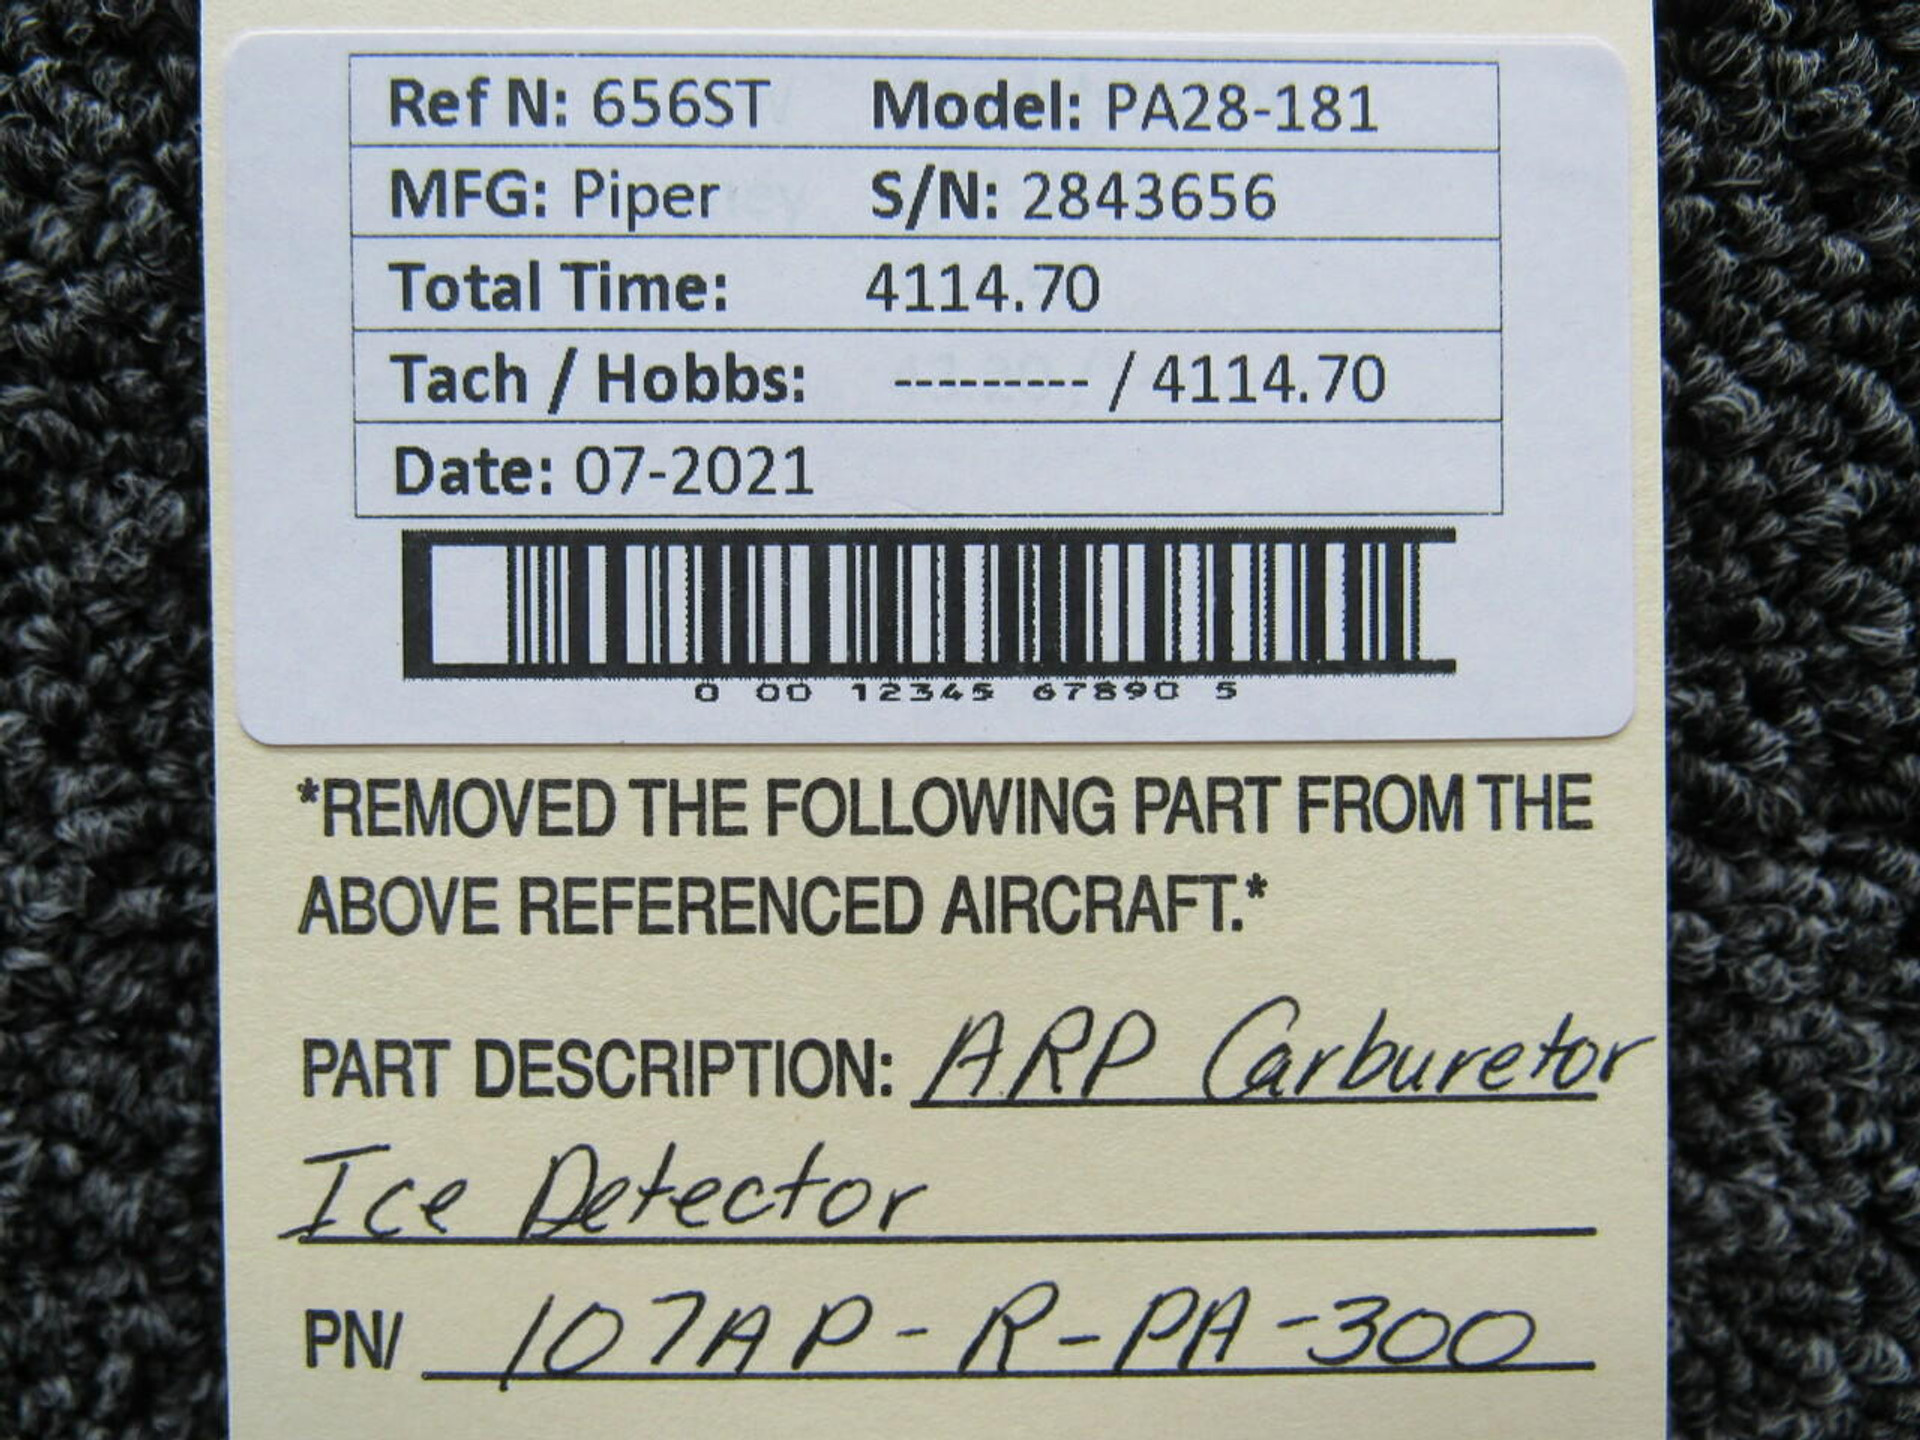 107AP-R-PA-300 Piper PA28-181 ARP Carburetor Ice Detector